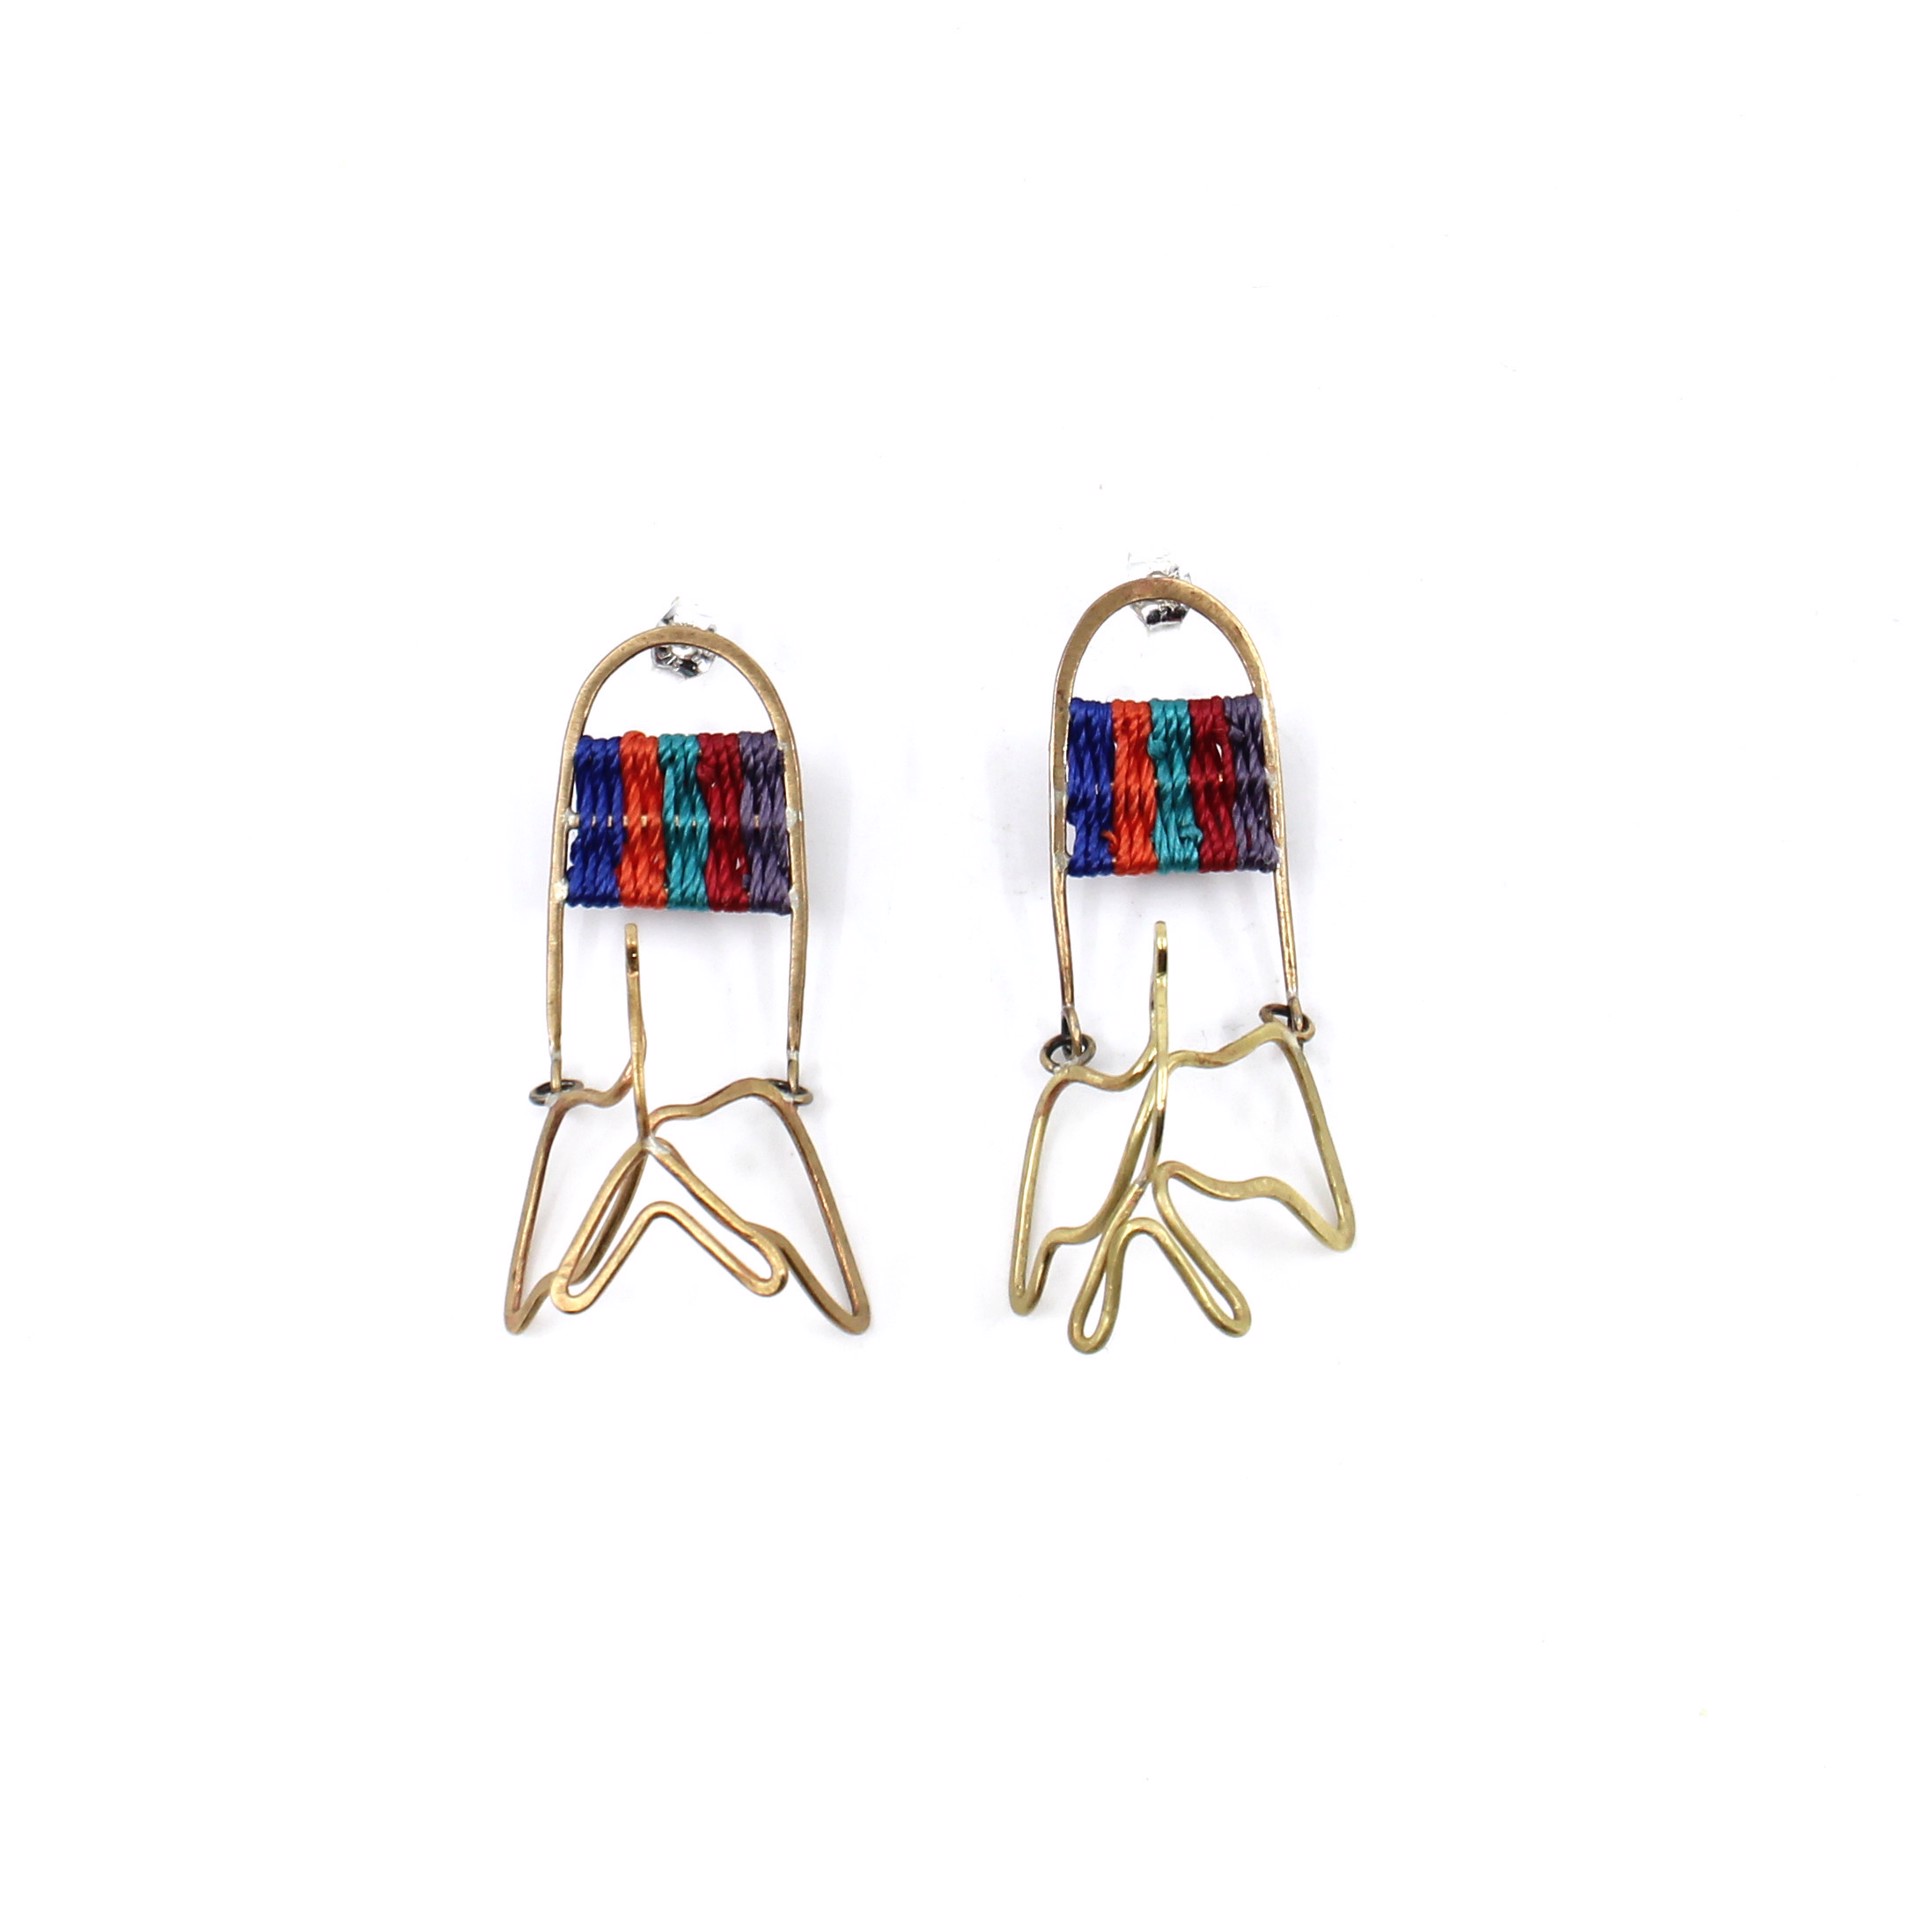 Little Bird Earrings by Flag Mountain Jewelry